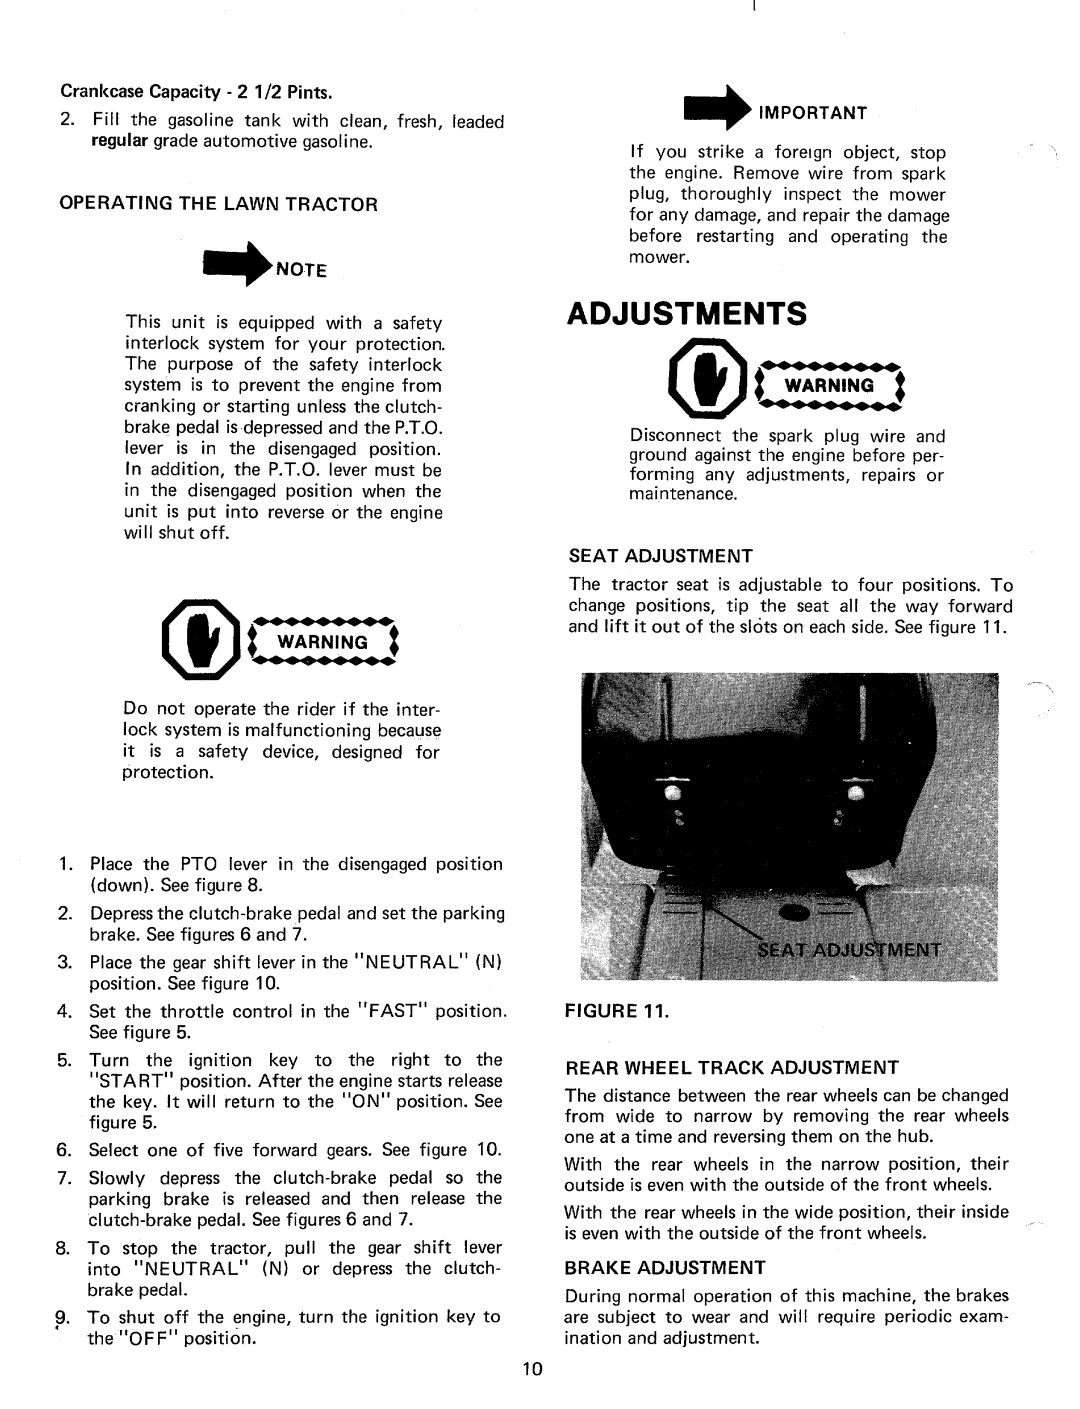 Bolens 132-730A manual 